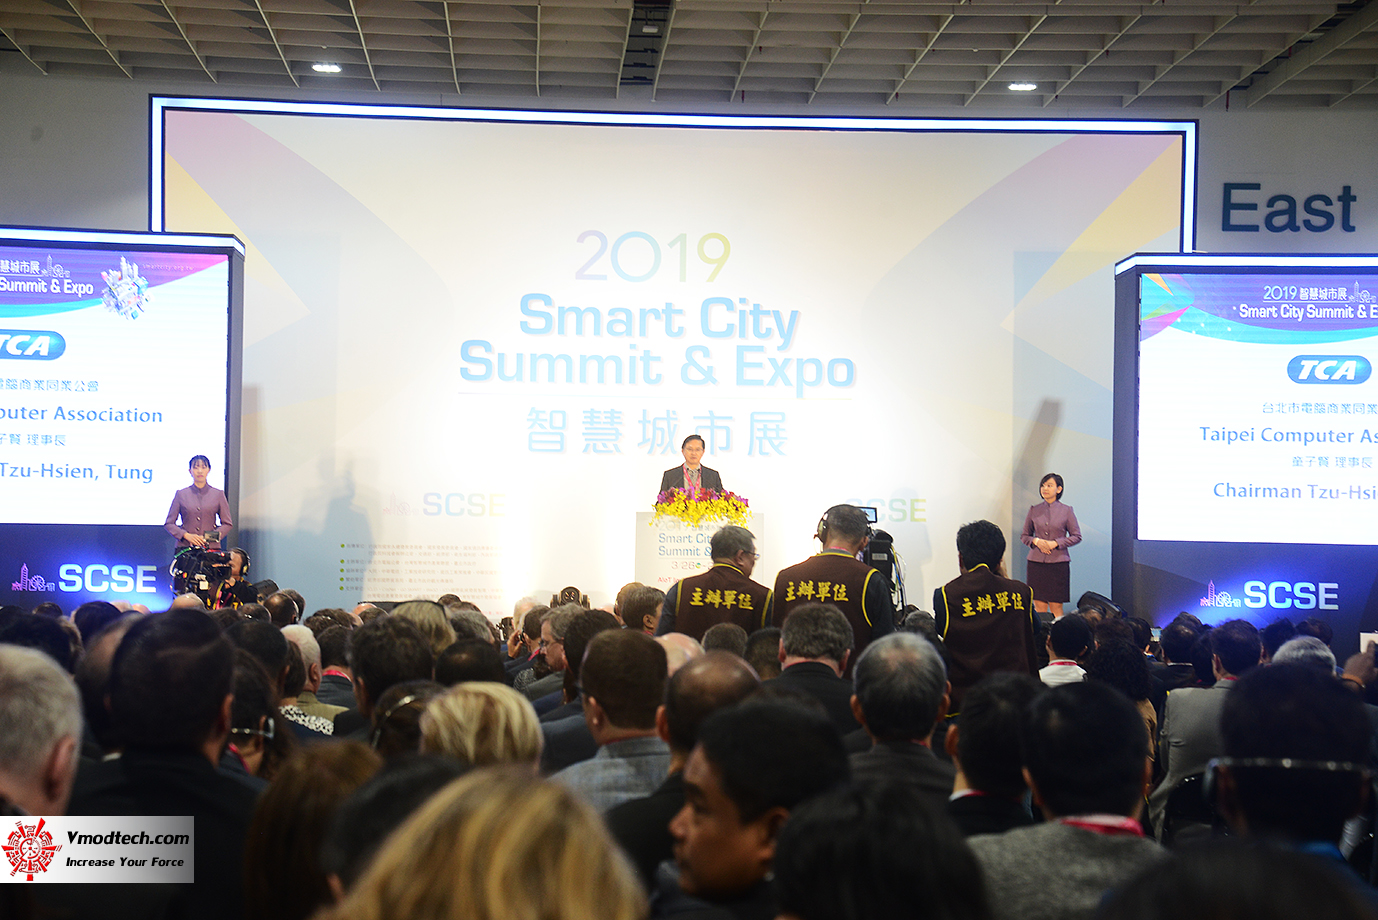 dsc 8220 เยี่ยมชมพิธีเปิด 2019 SMART CITY SUMMIT & EXPO ณ กรุงไทเป ประเทศไต้หวัน 